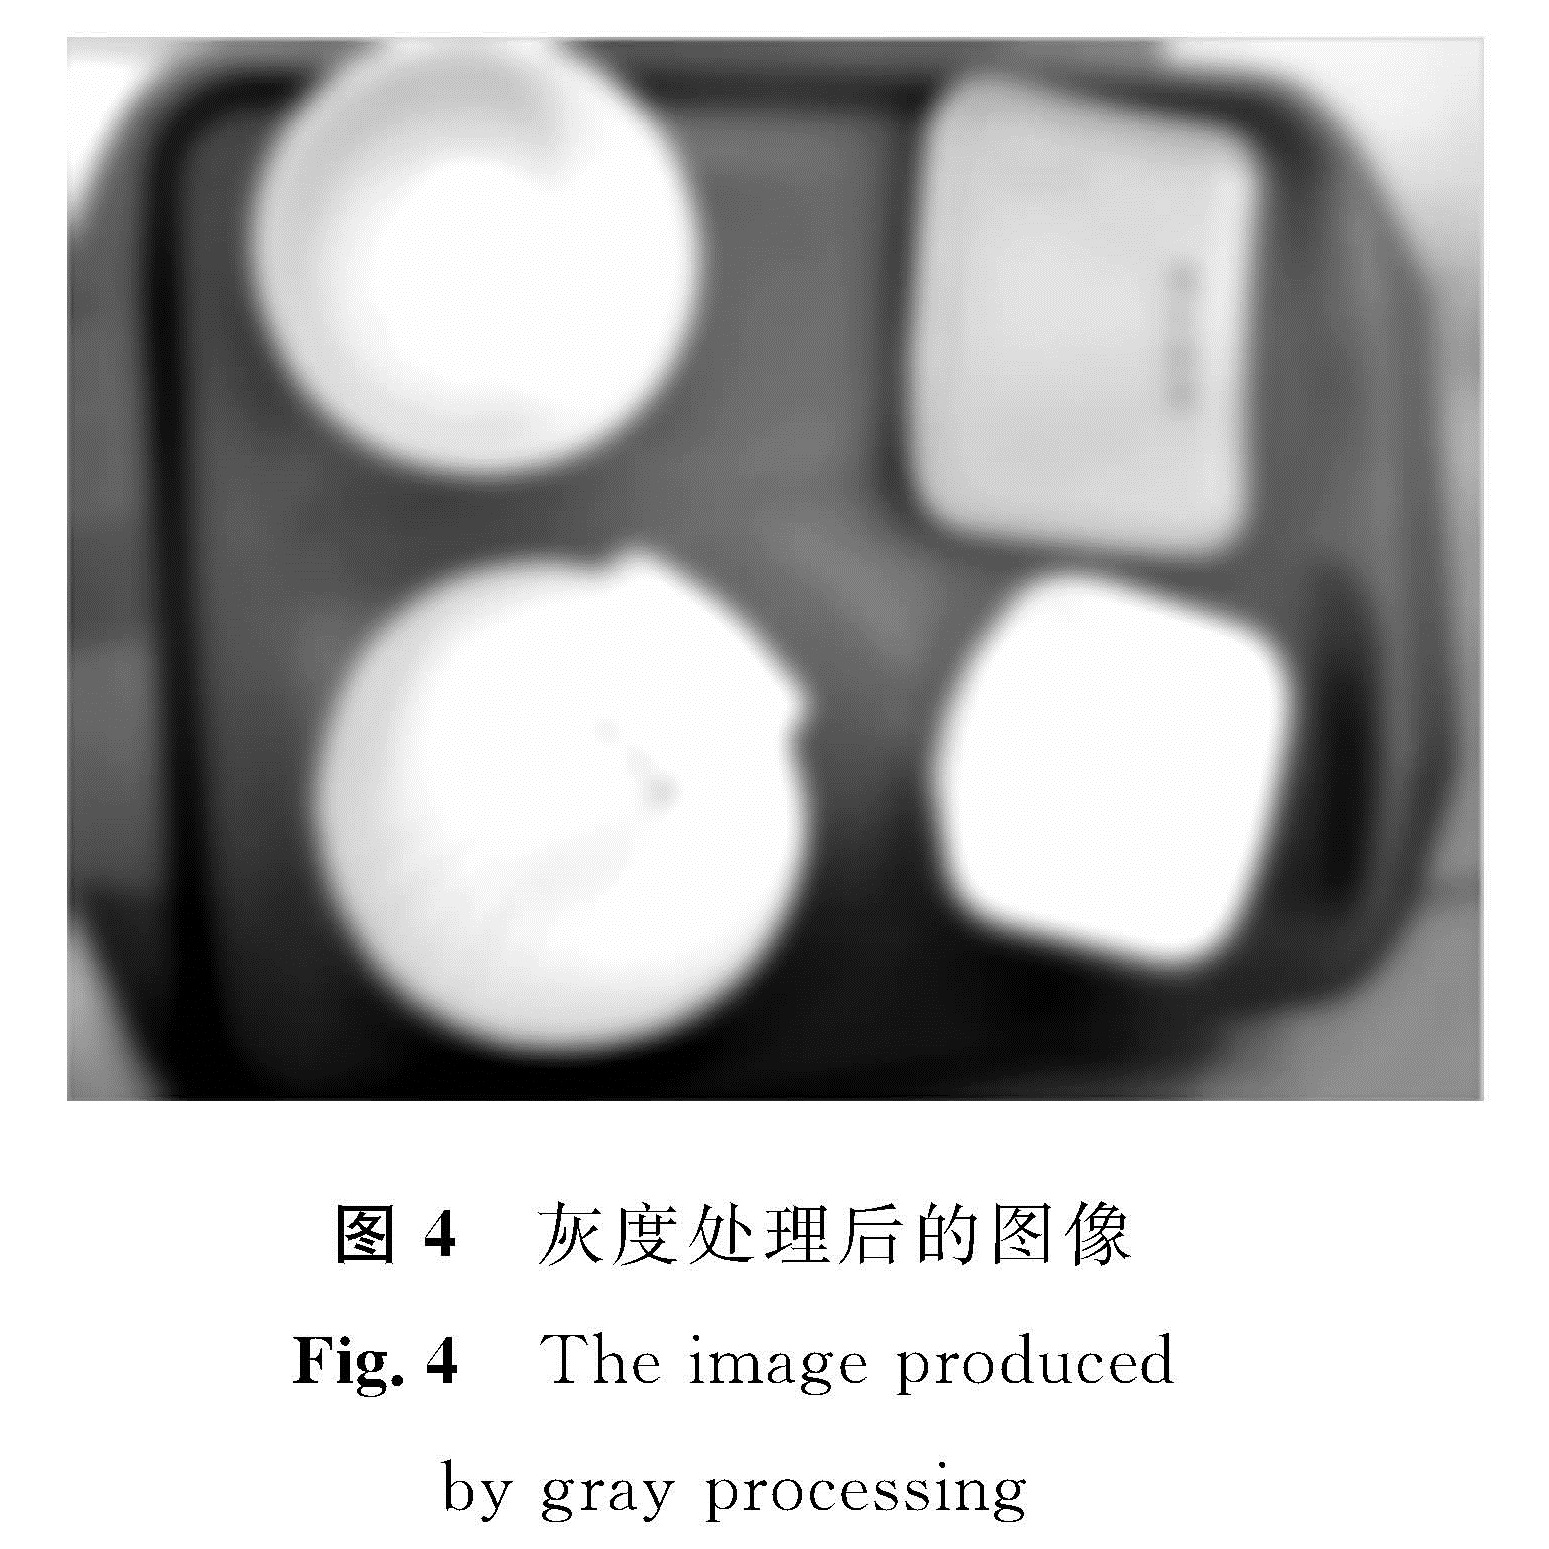 图4 灰度处理后的图像<br/>Fig.4 The image produced by gray processing